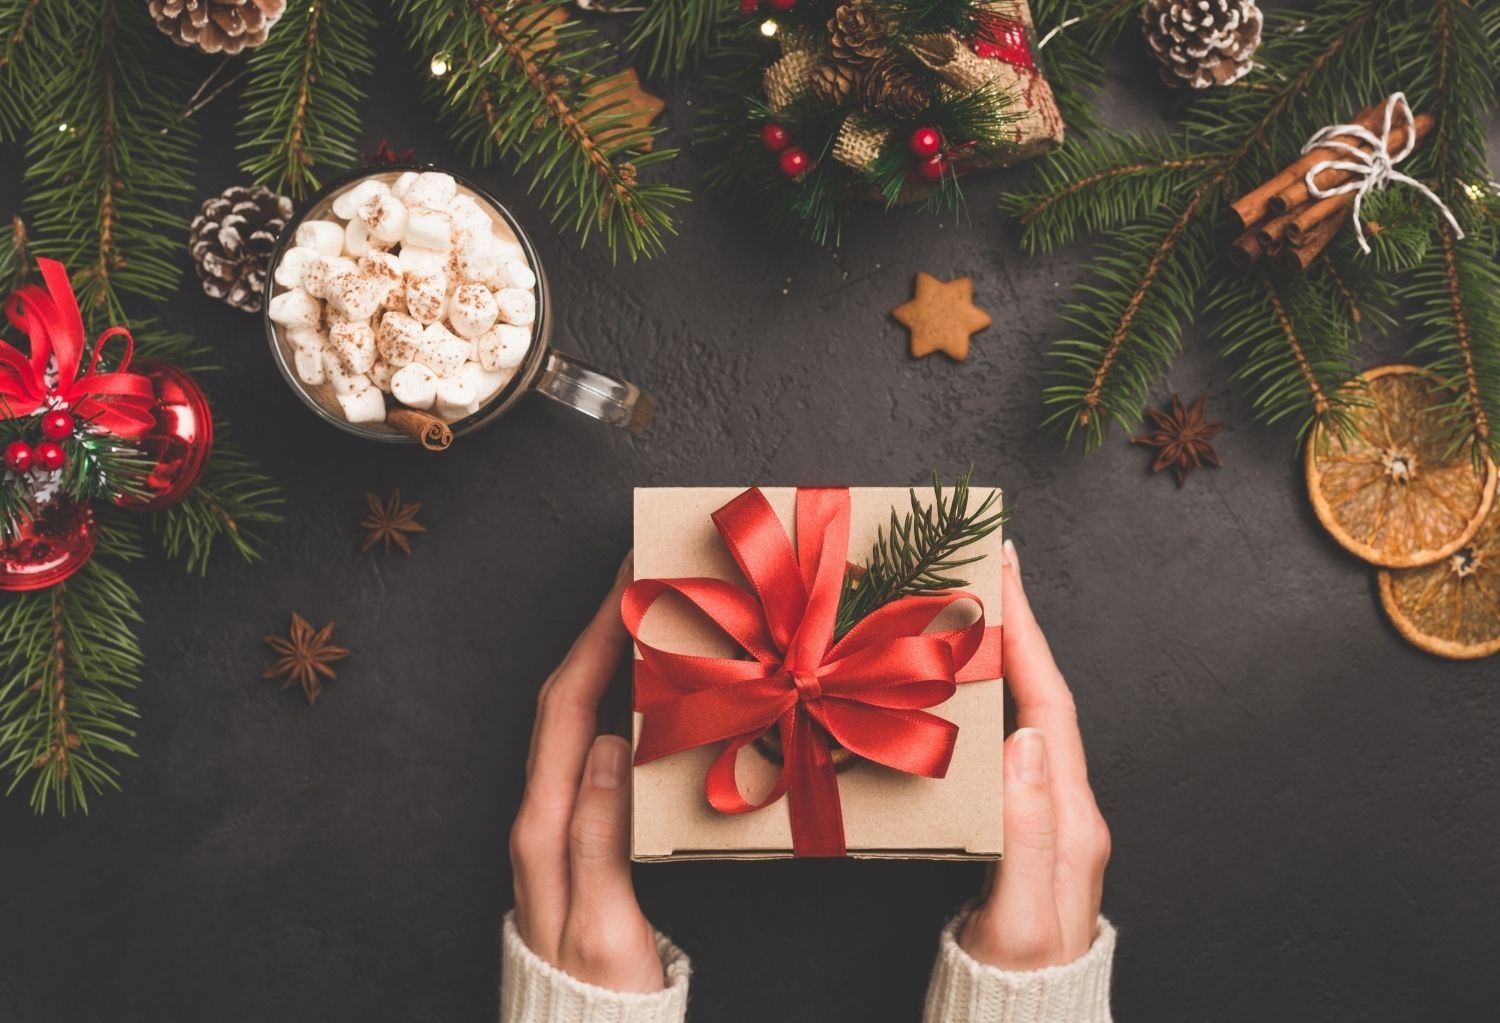 Te ayudamos a hacer la lista de regalos para navidad ¡Acierto seguro!